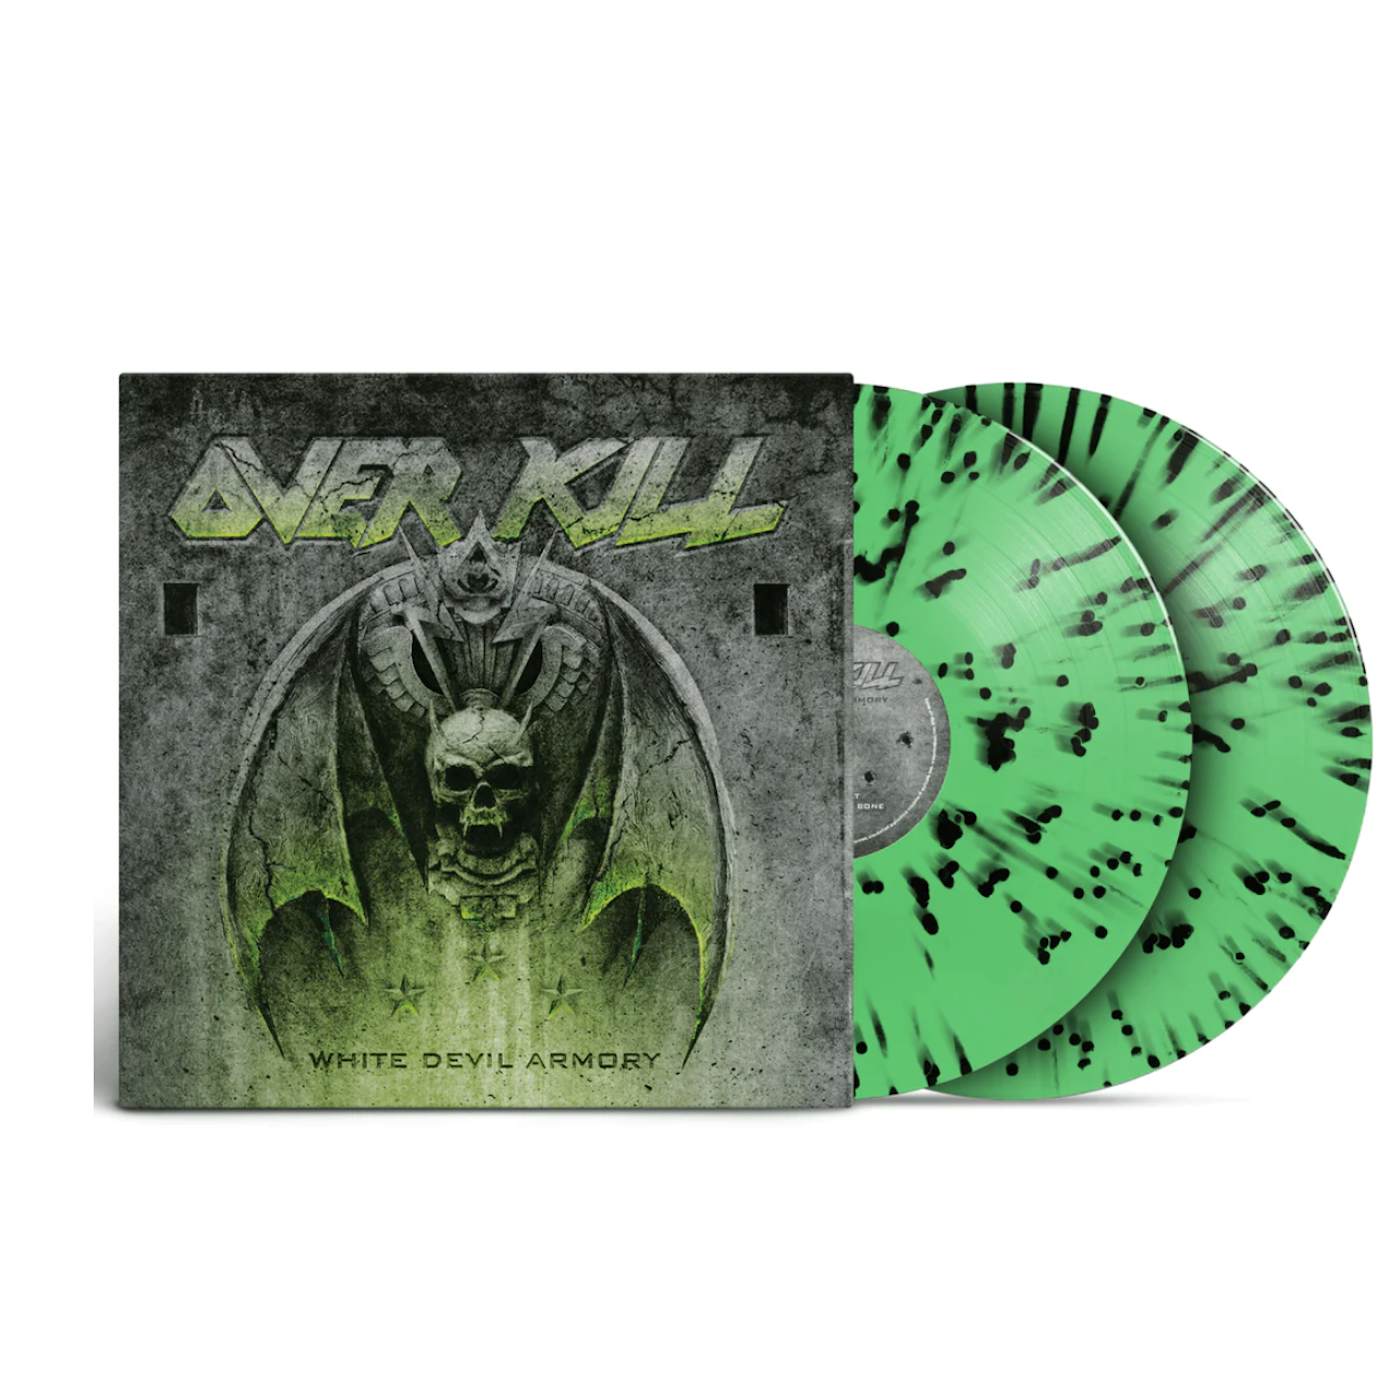 Overkill "White Devil Armory" 2x12" (Vinyl)